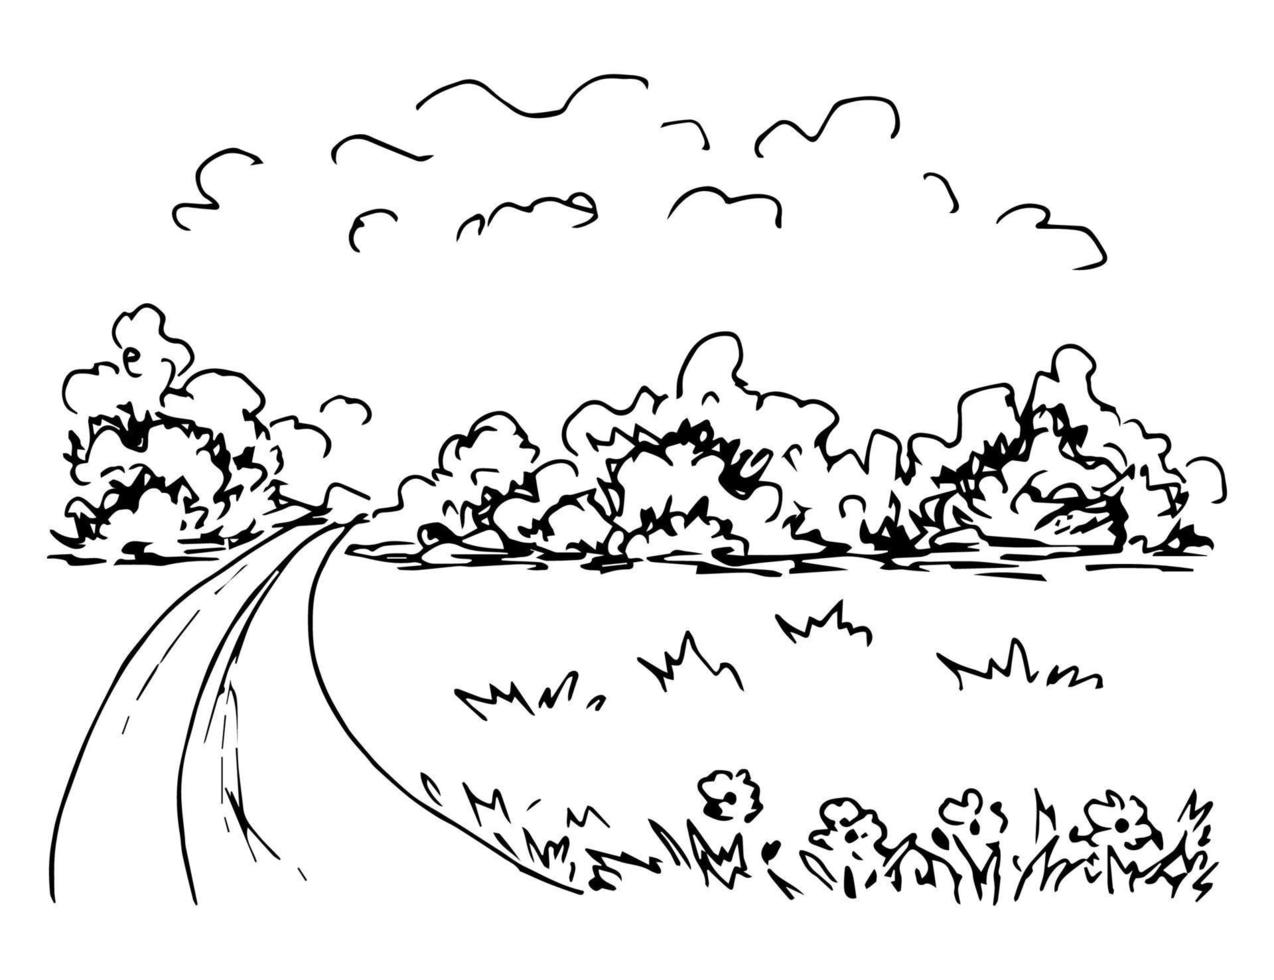 handgezeichnete einfache Vektorskizze mit schwarzem Umriss. Vorstadtlandschaft, Landstraße, Gras und Blumen im Vordergrund, Büsche, Wiese, Bäume am Horizont, Wolken. vektor